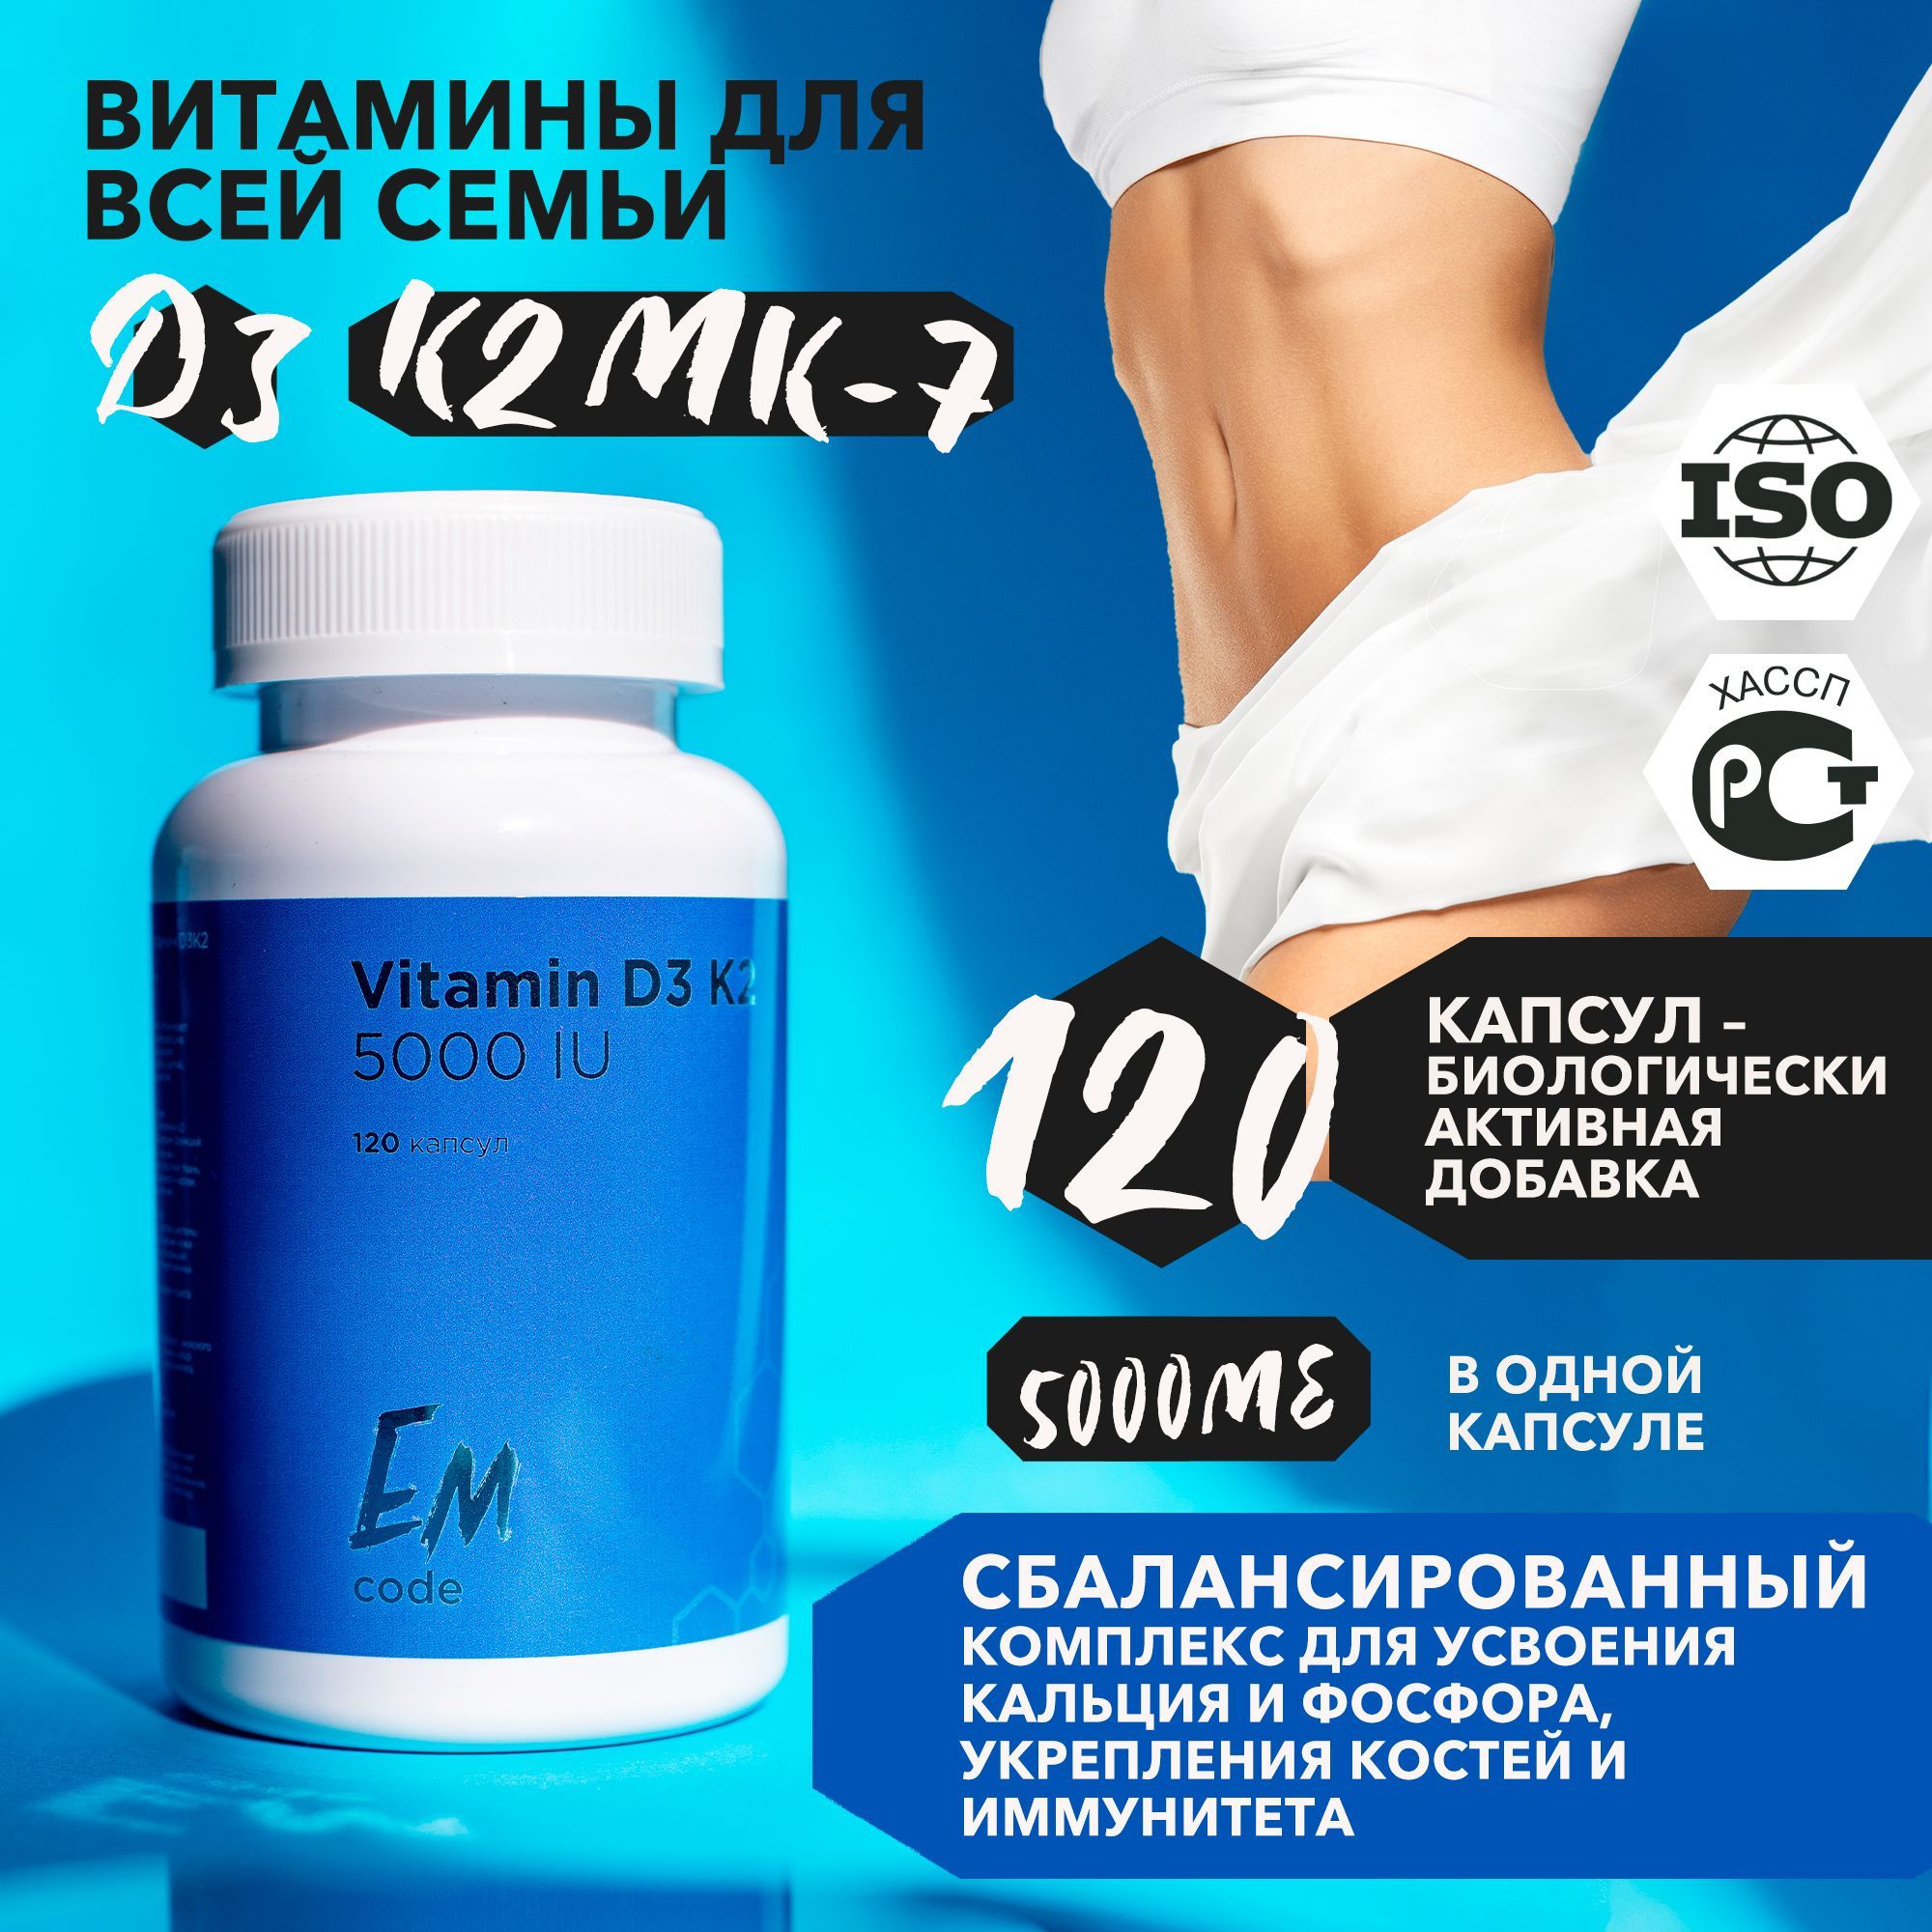 Витамины для мужчин 50 отзывы. Витамины для мужского здоровья. Витамины для мужчин в капсулах. Витамины для мужчин комплекс самые эффективные. Алтайские комплексы витаминов для мужчин и женщин.